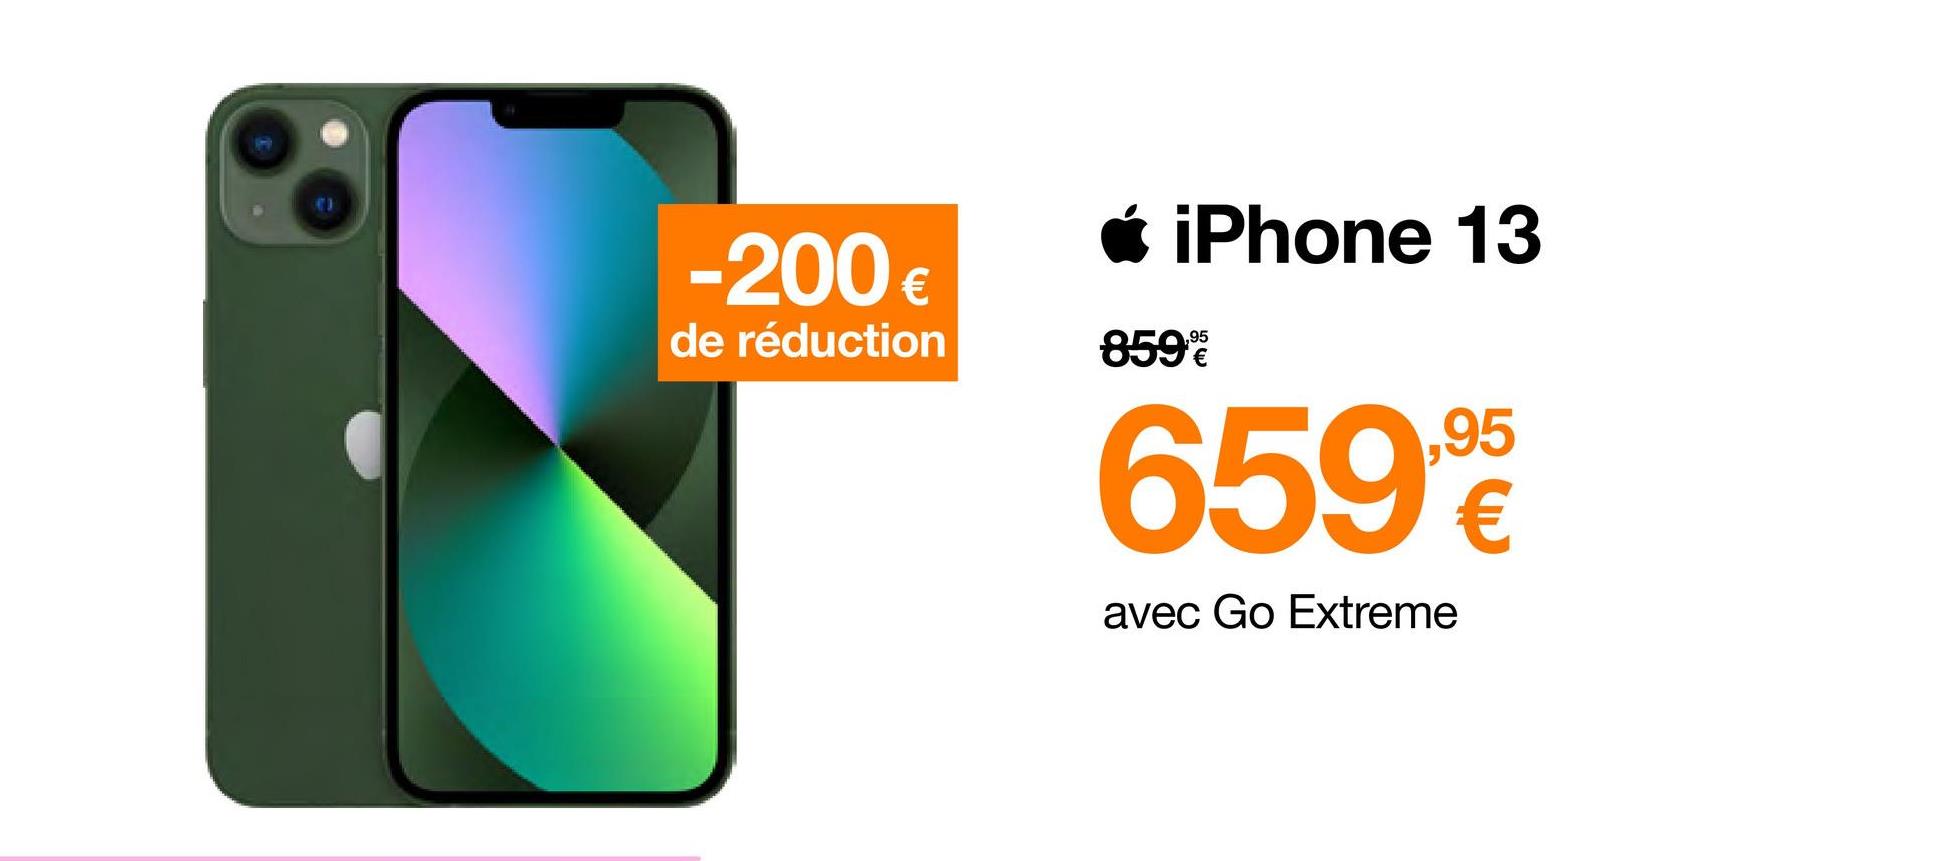 -200 €
de réduction
iPhone 13
859%
659%
avec Go Extreme